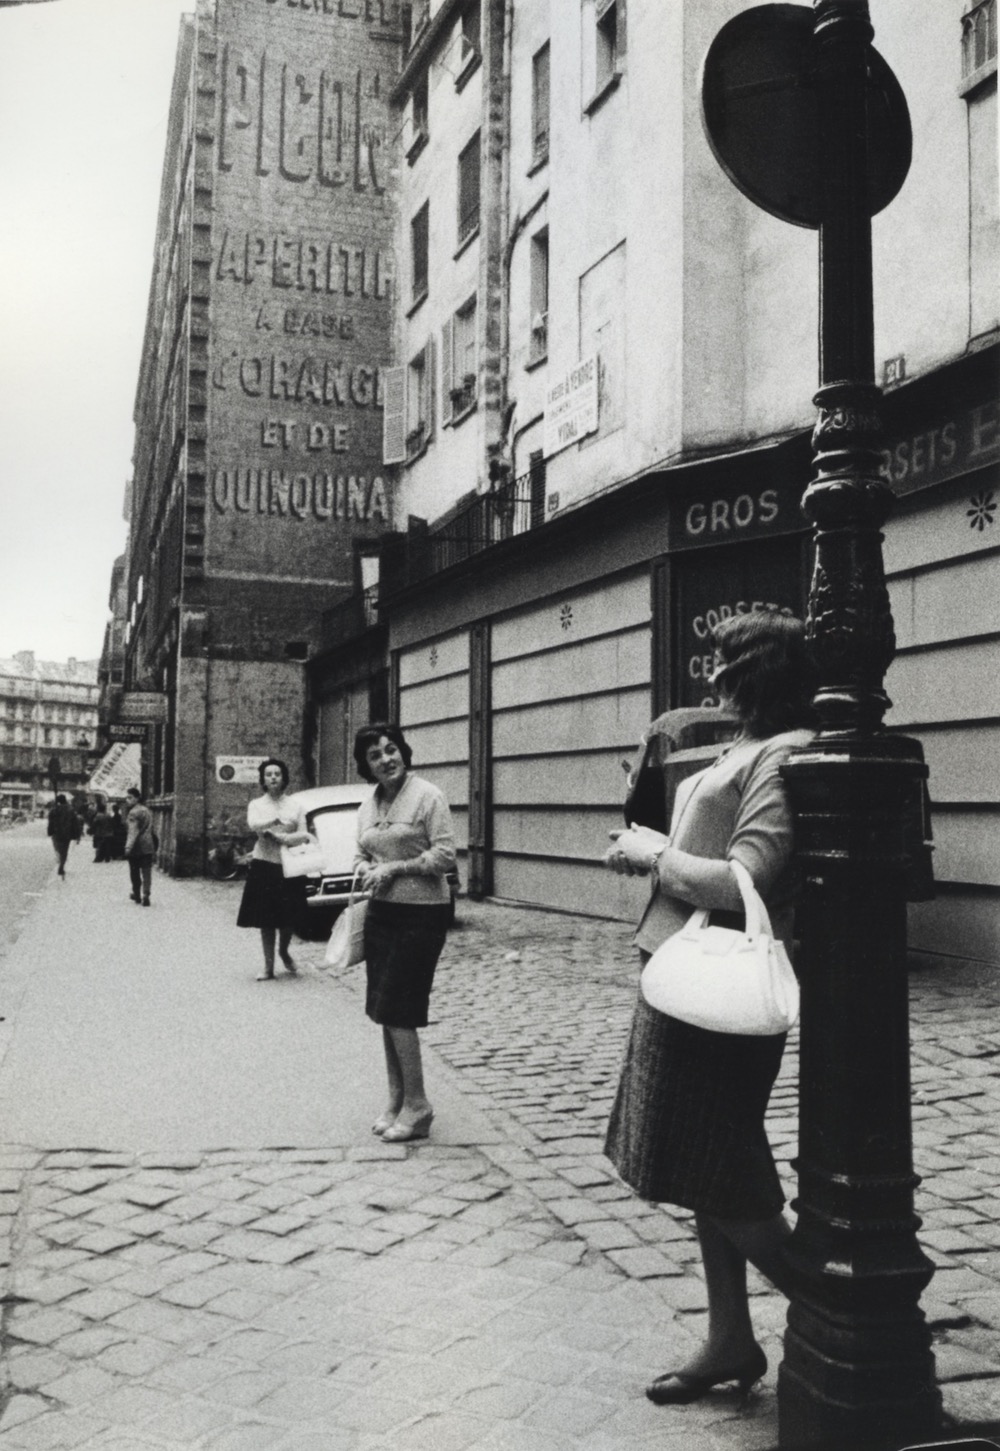 Waiting, Prostitution, Rue Saint Denis, Paris, 1960